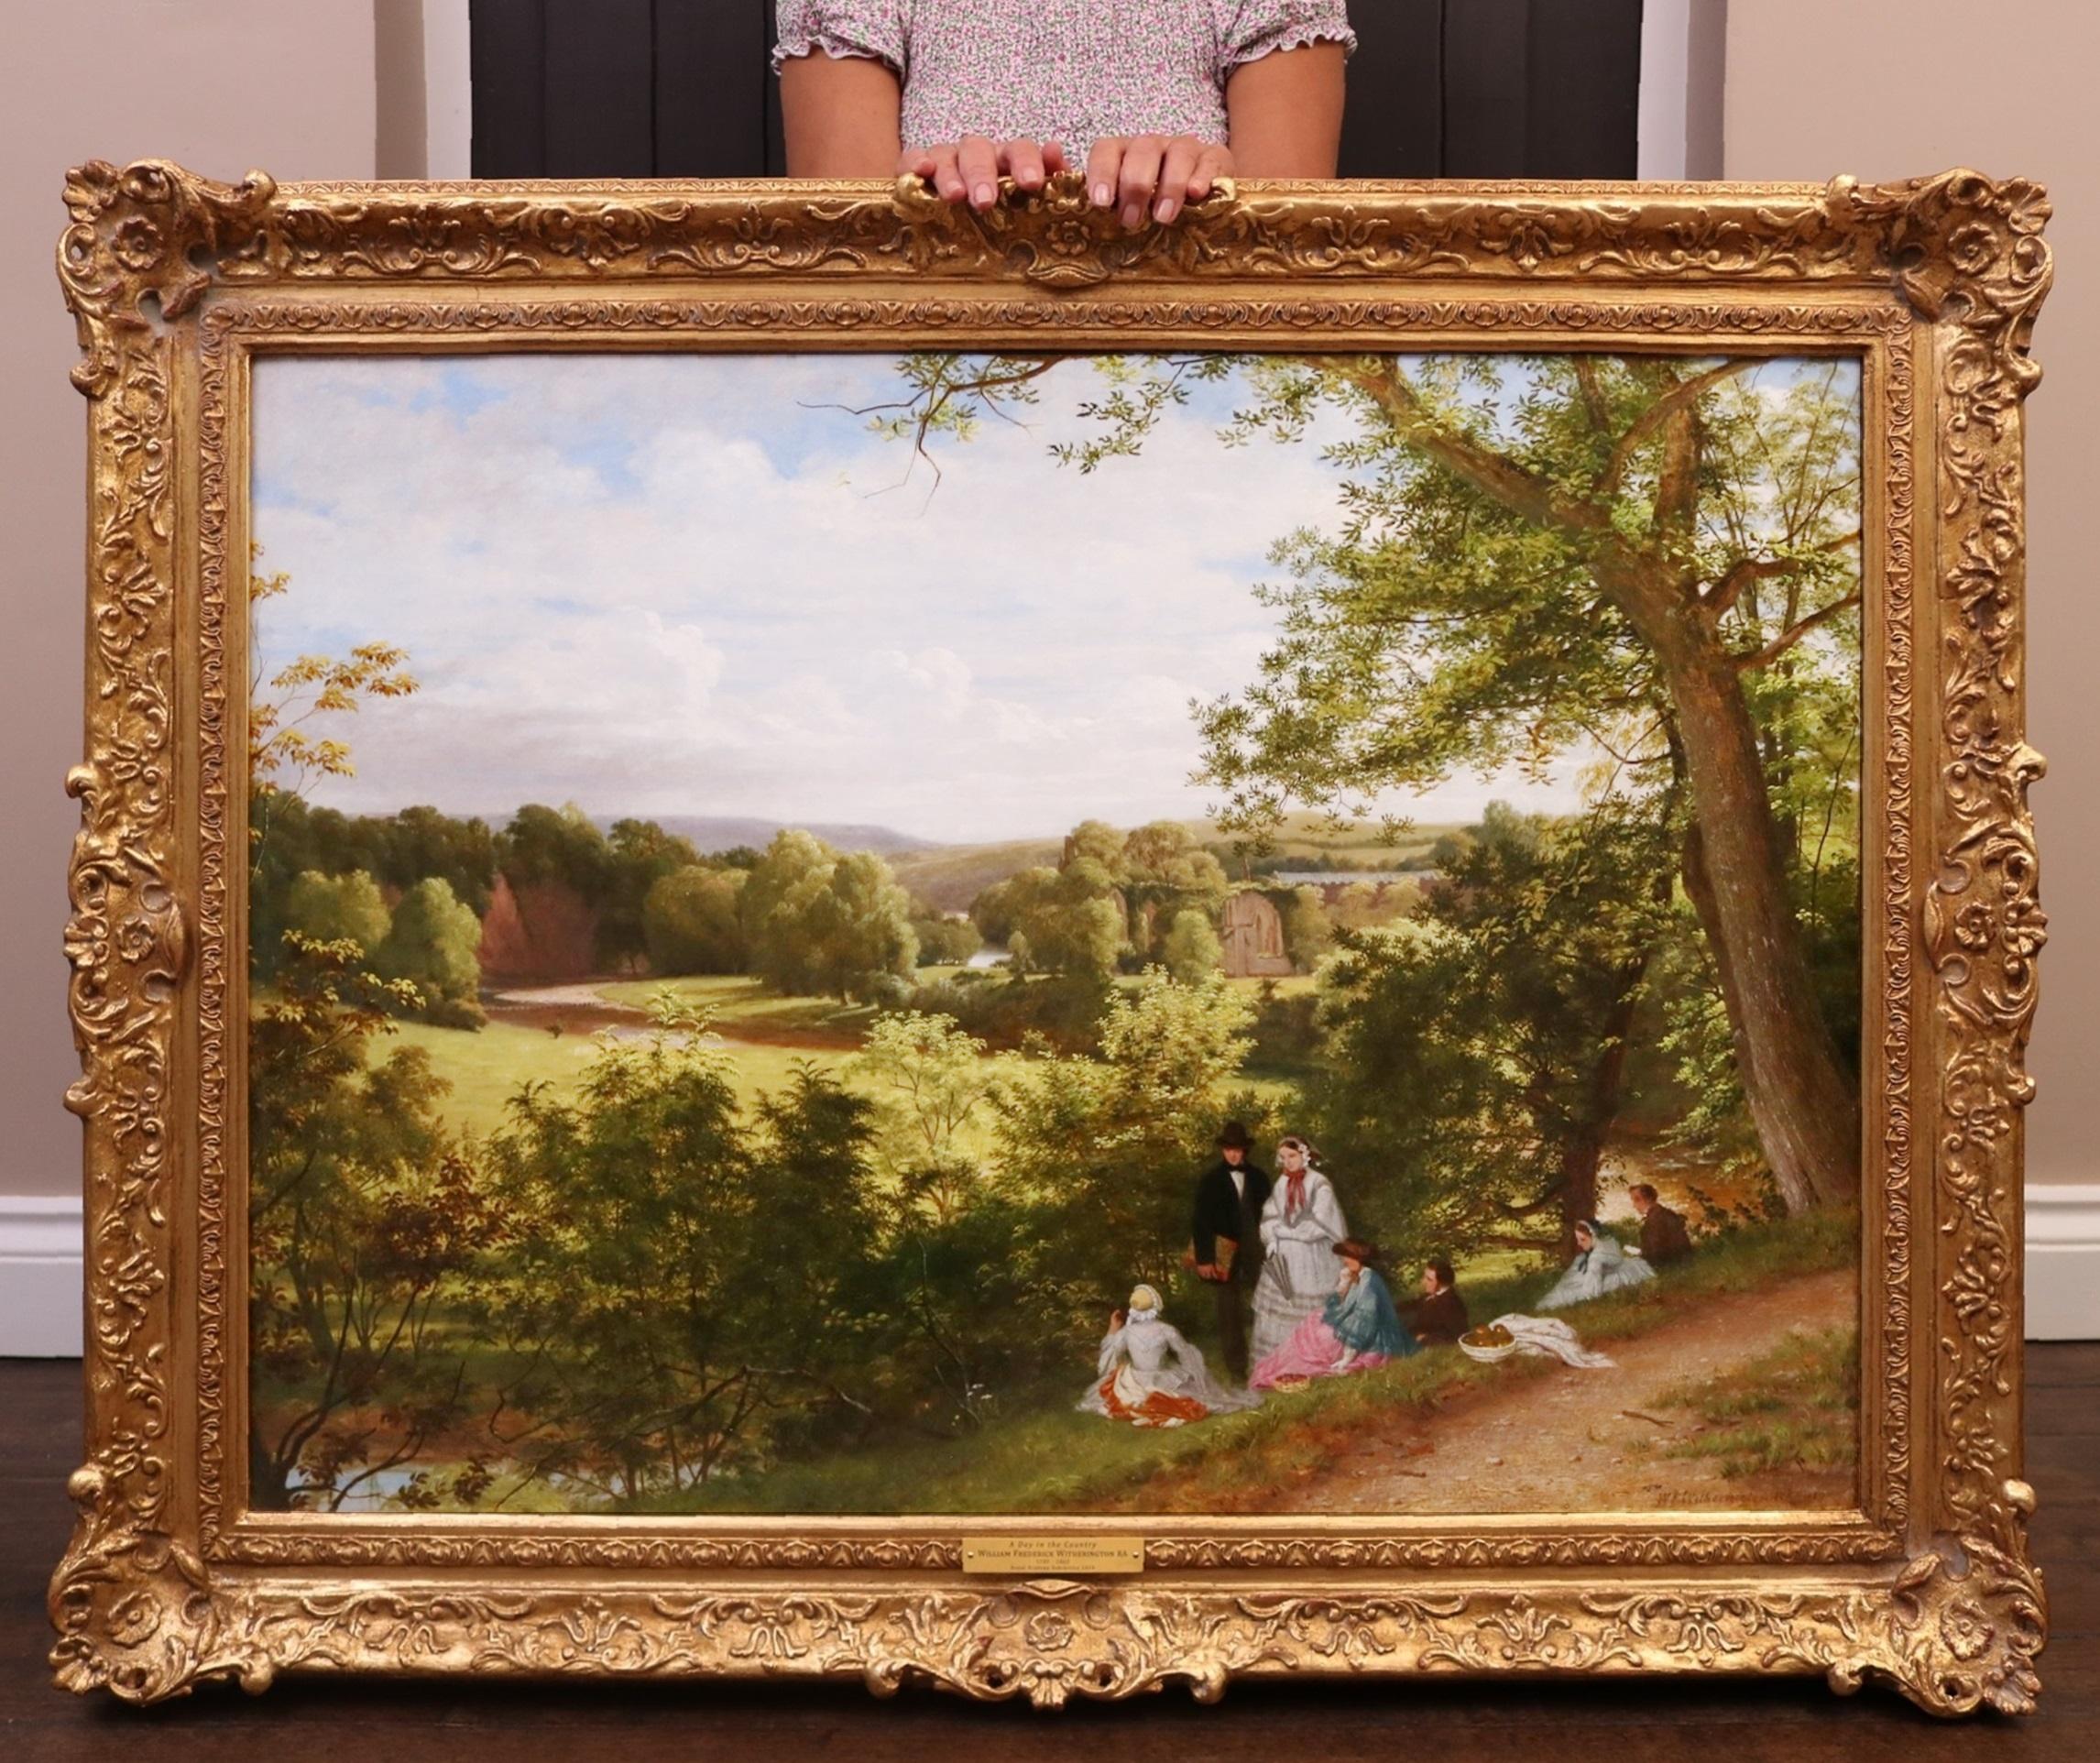 Landscape Painting William Frederick Witherington - Une journée dans le County - Grande peinture à l'huile du 19e siècle de l'Académie royale, paysage